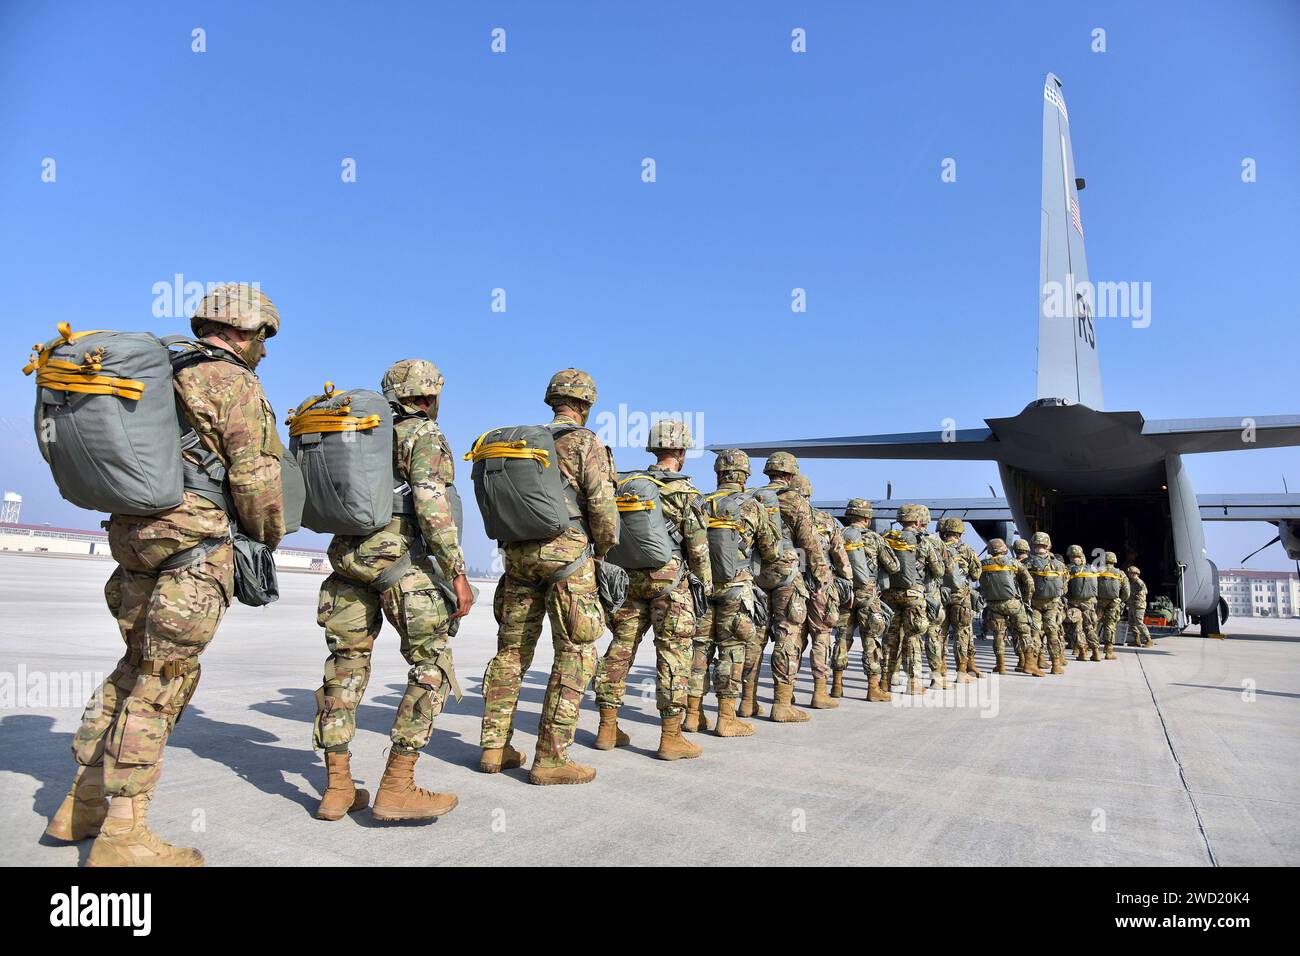 Les parachutistes de l'US Army se préparent à monter à bord d'un avion C-130 Hercules de l'US Air Force. Banque D'Images